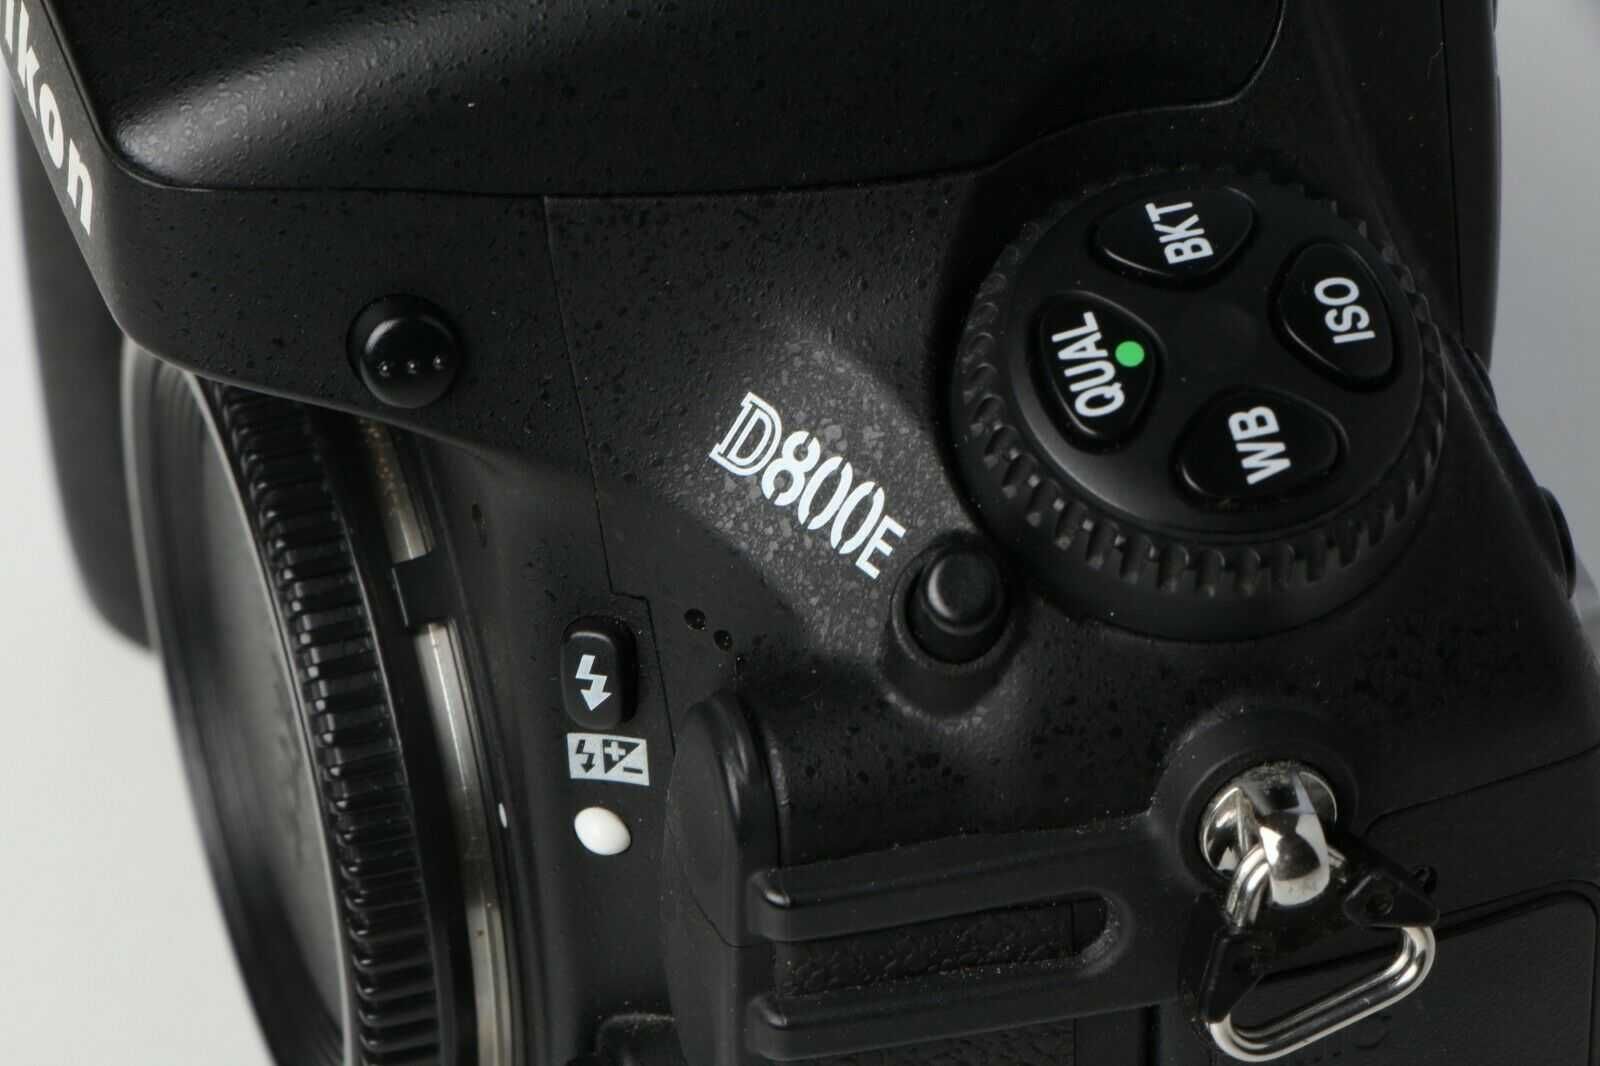 Nikon d800E, com Grip